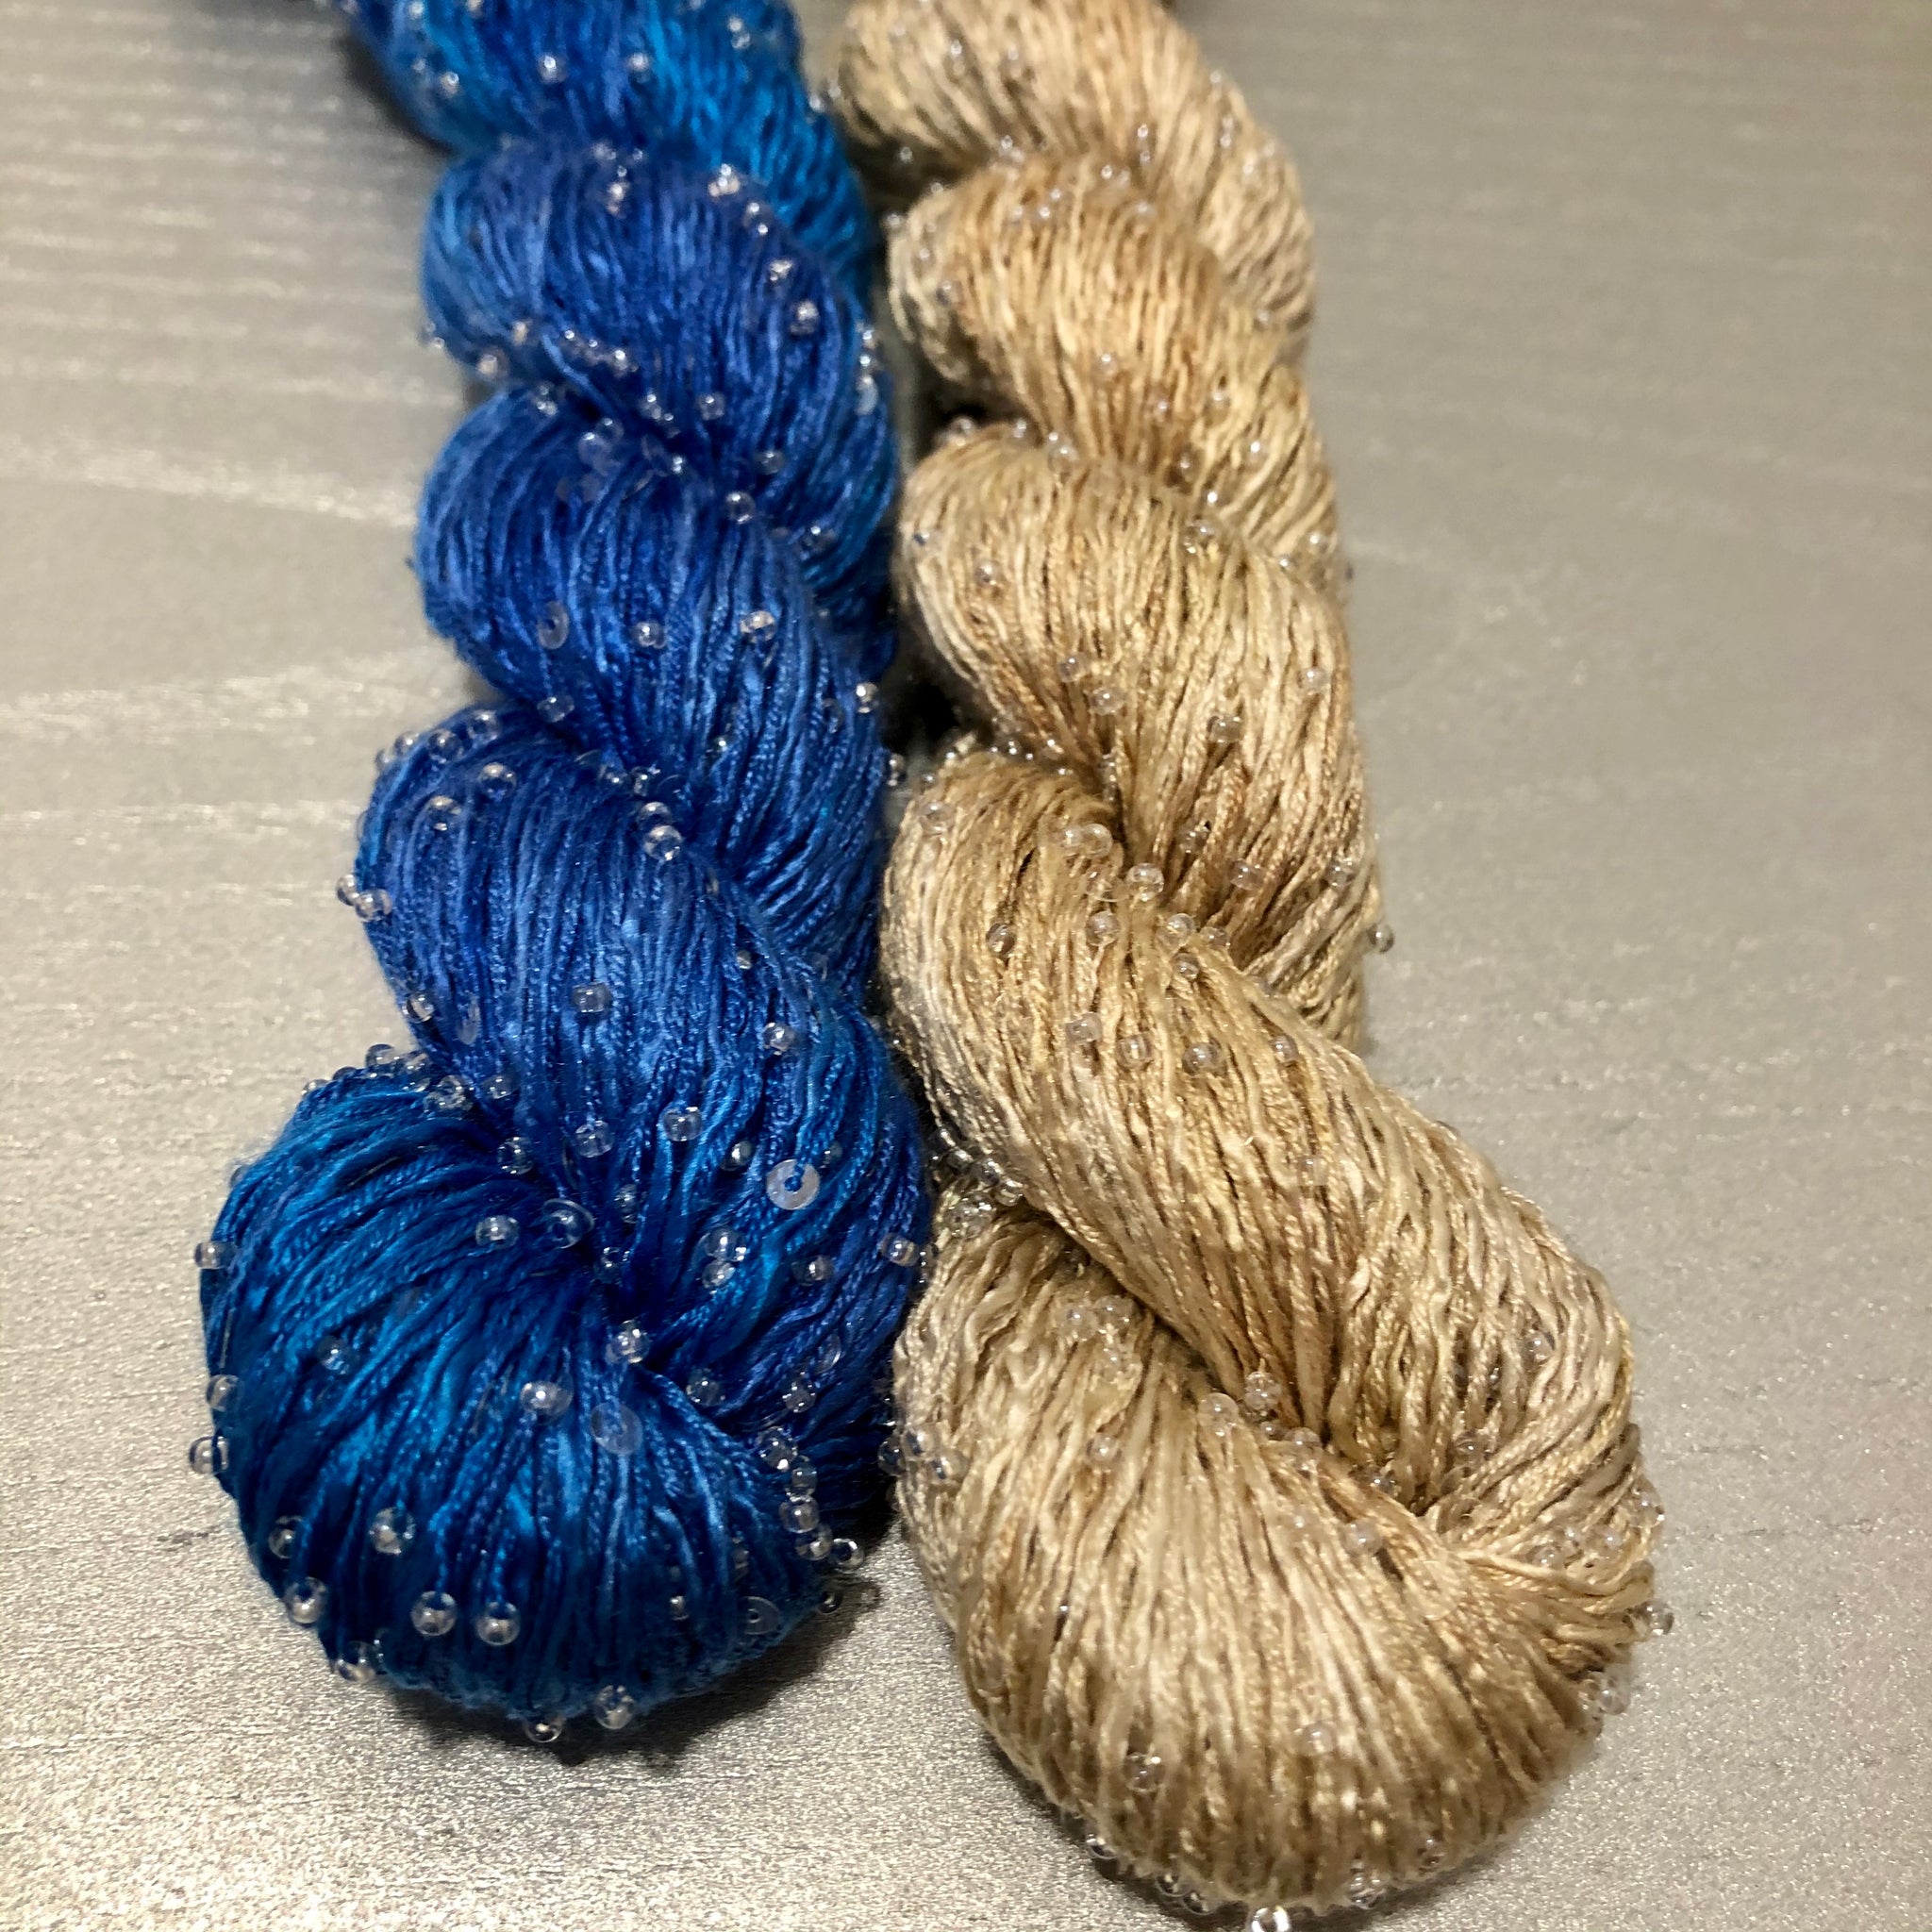 Blue Ecru beads only